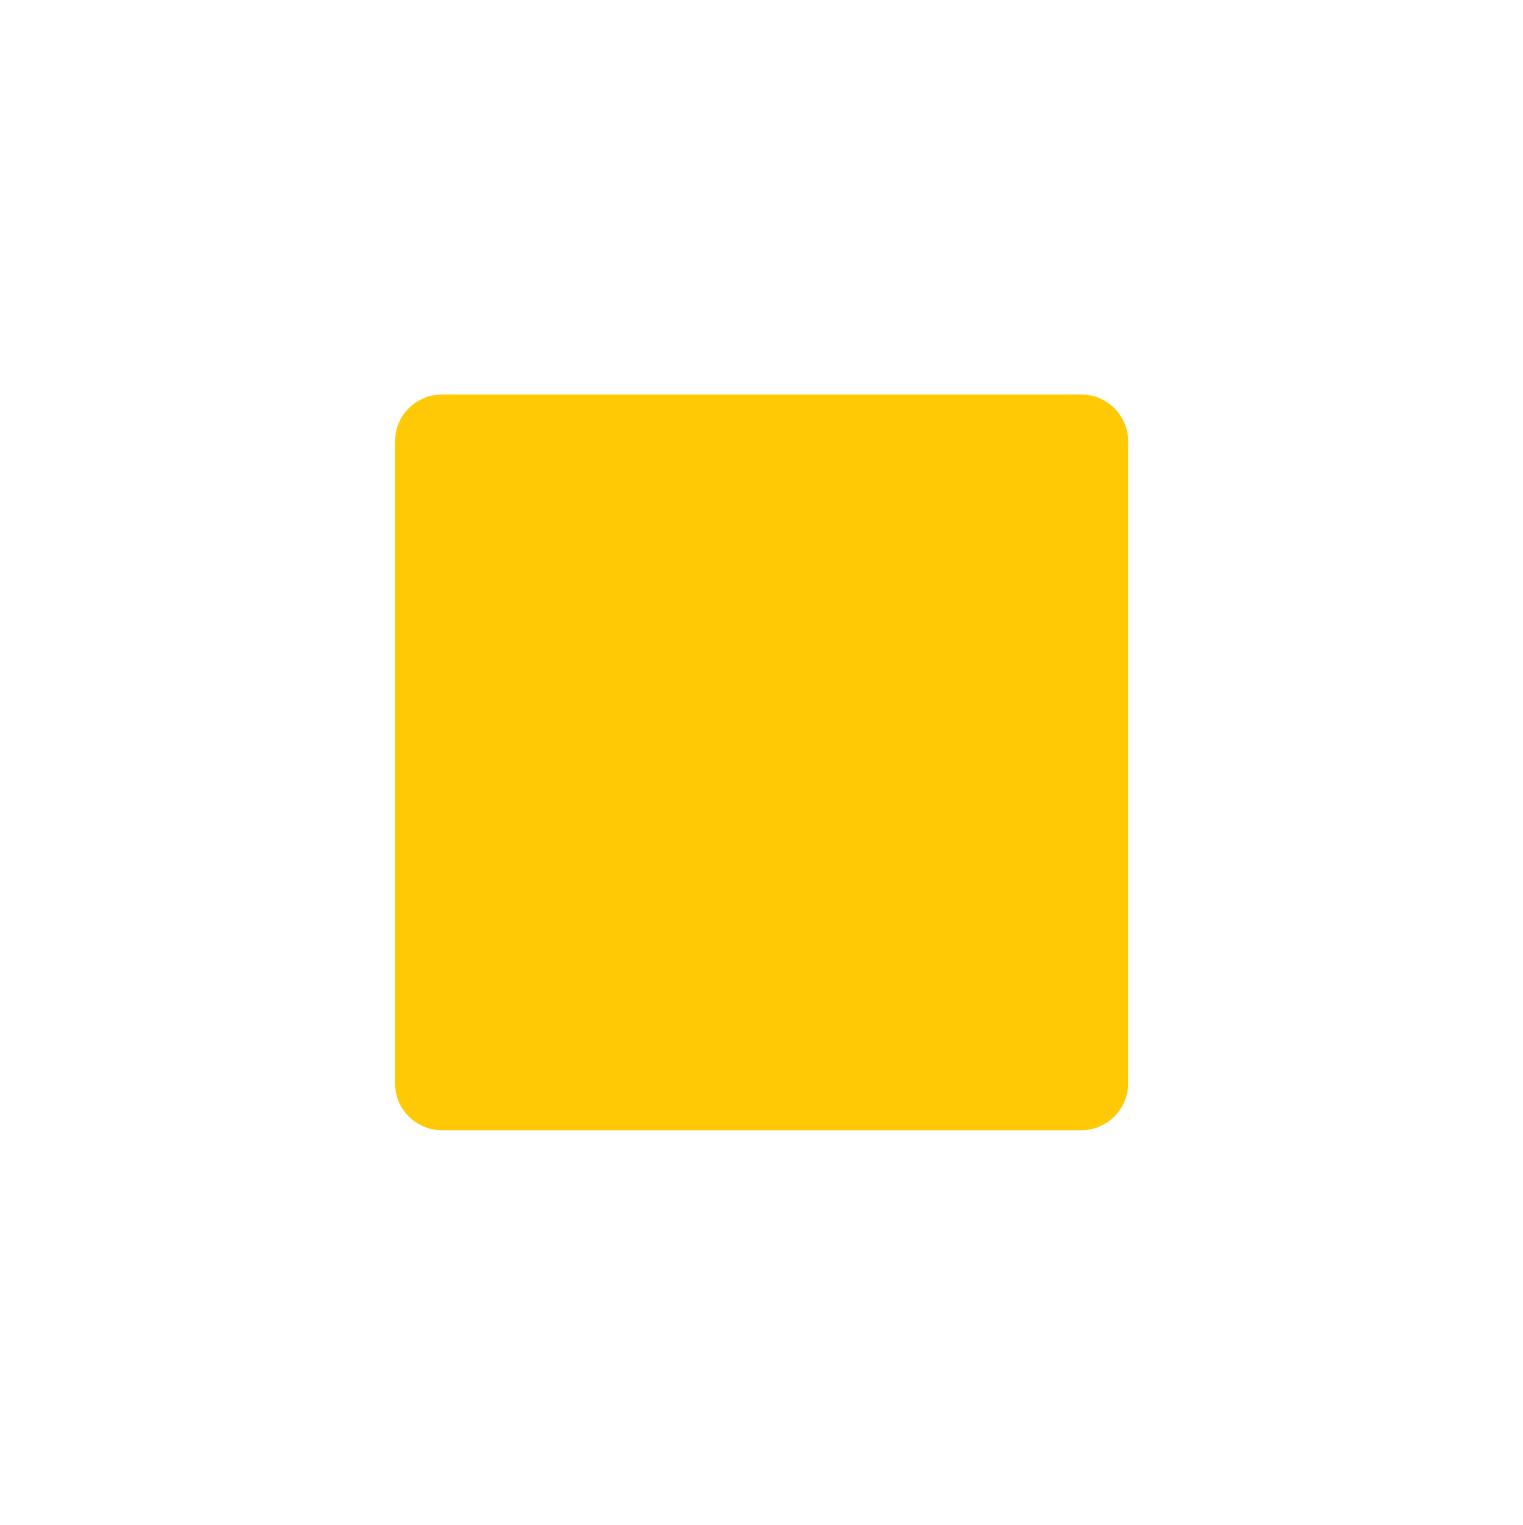 Life Storage logo for dark backgrounds (transparent PNG)